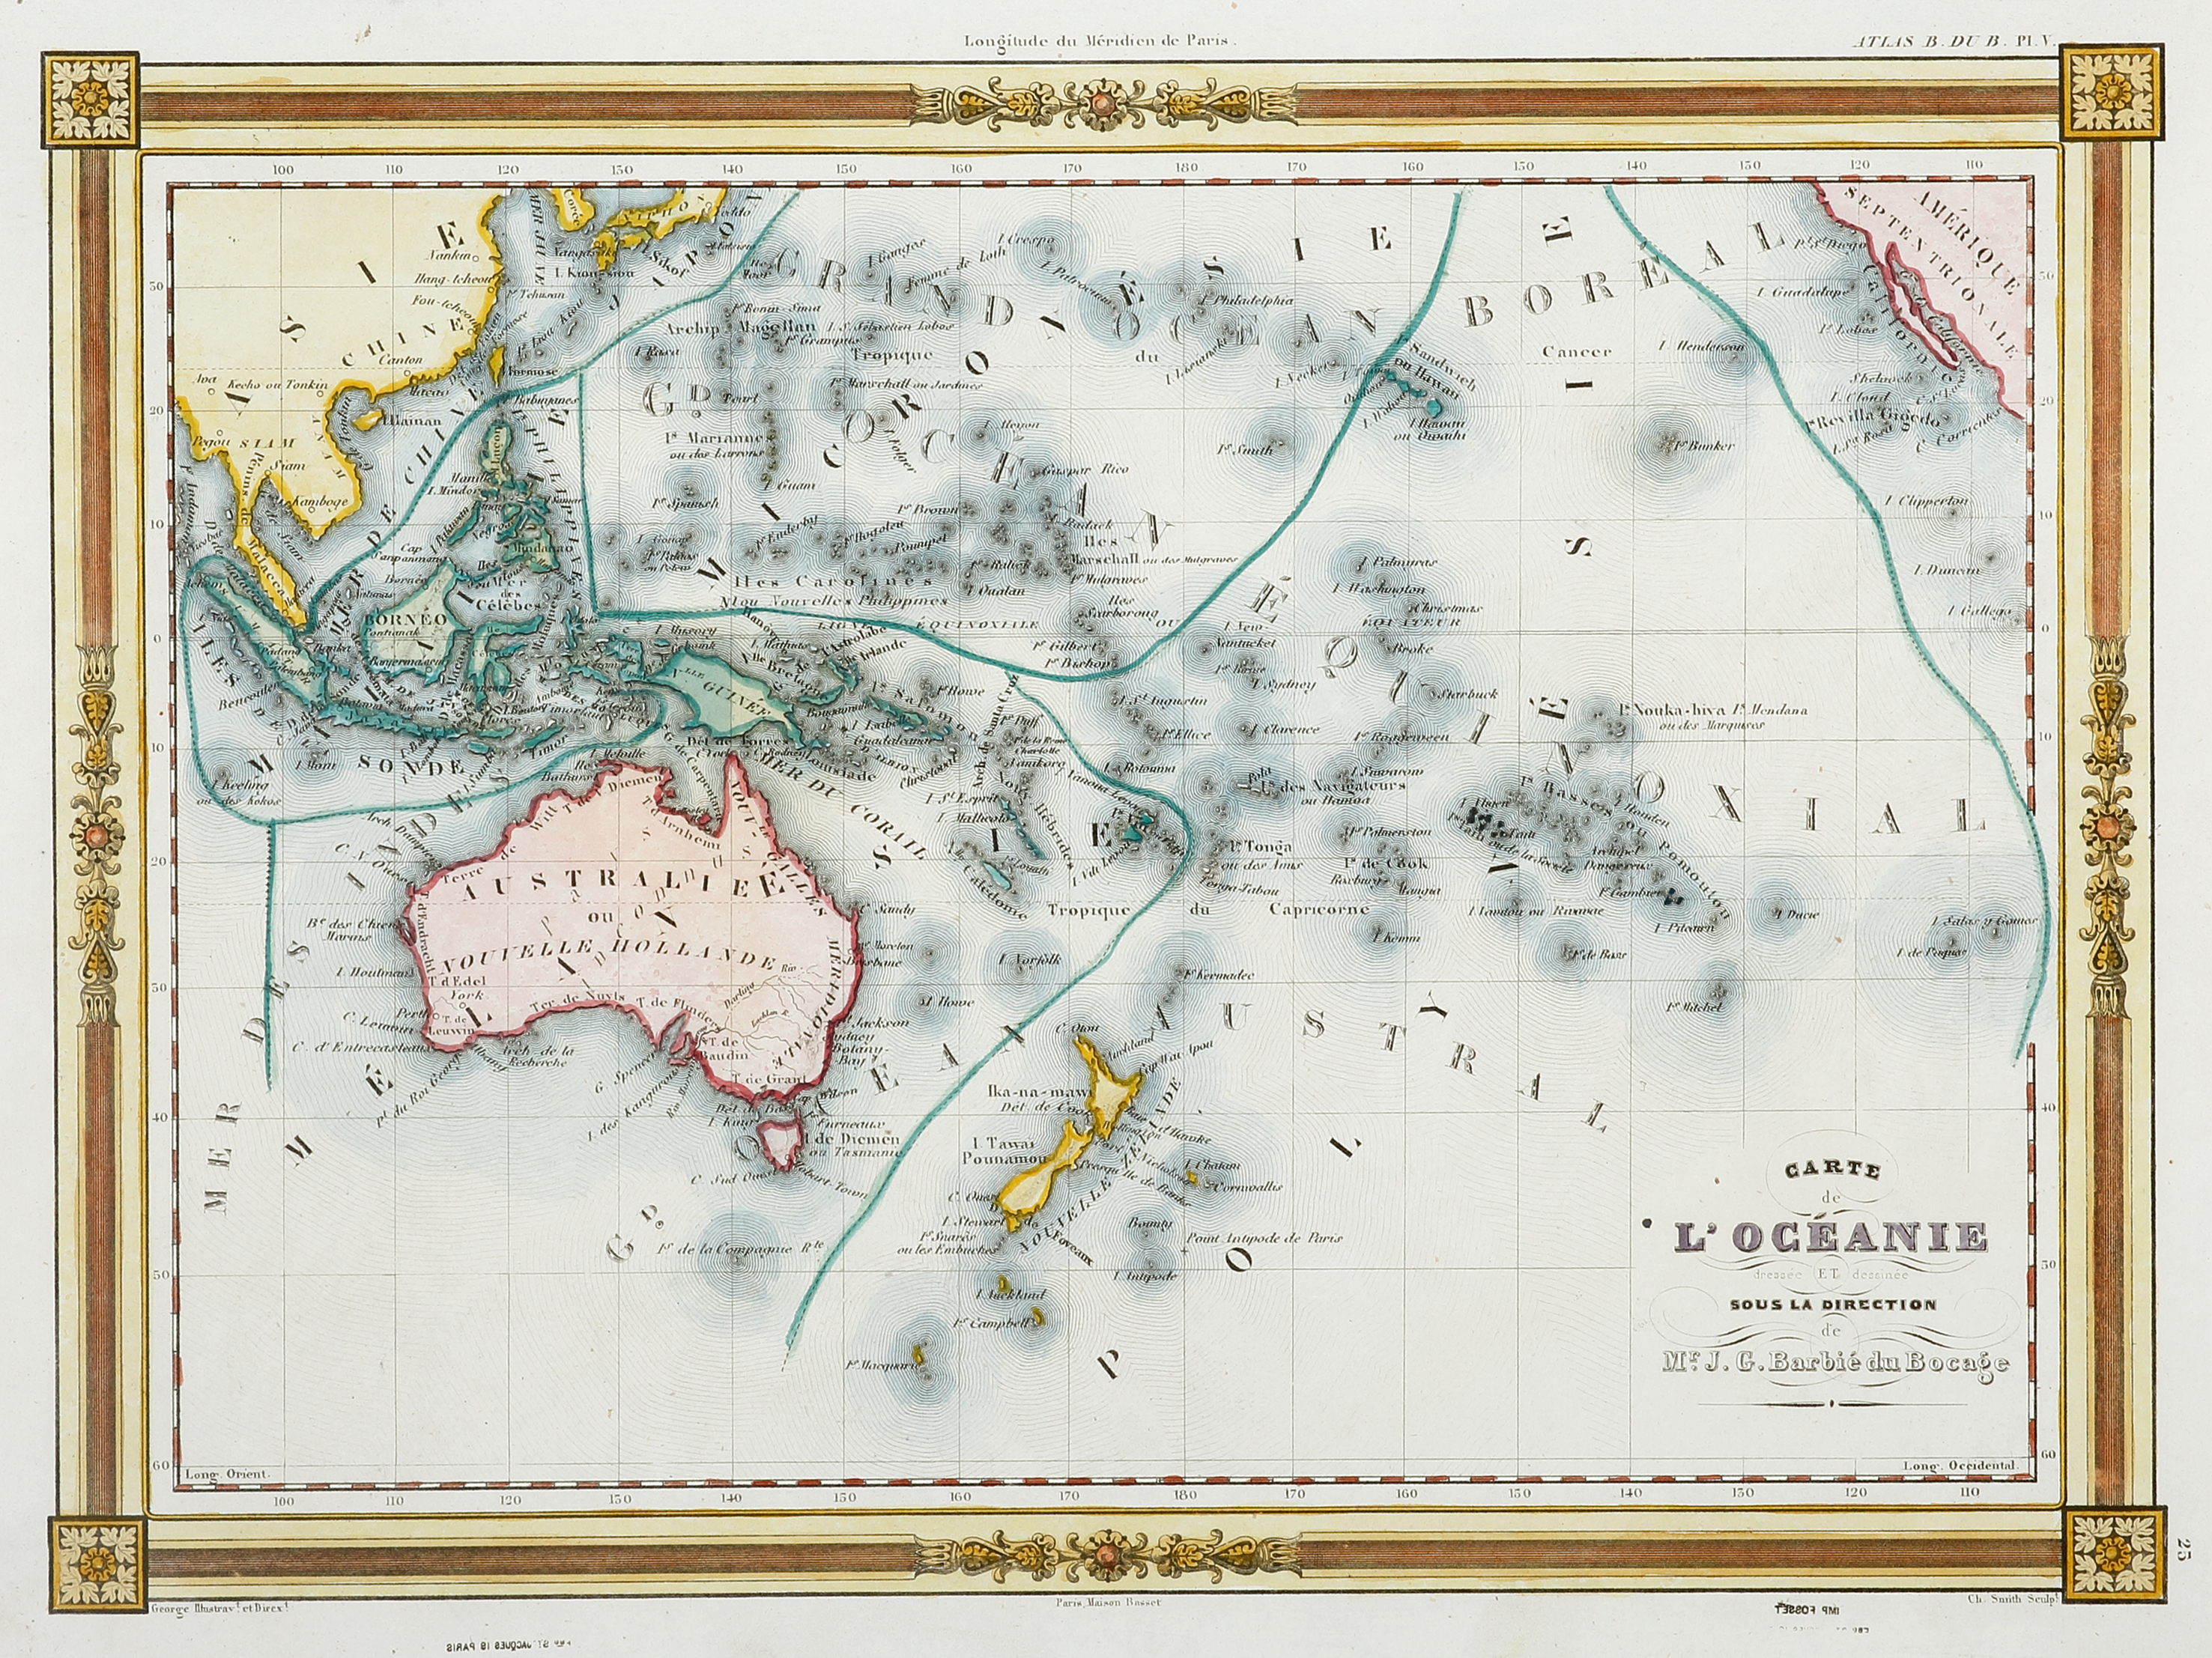 Carte de L'Oceanie dressee et desinee sous la Direction Mr. J.G.Barbie du Bocage. - Antique Map from 1845